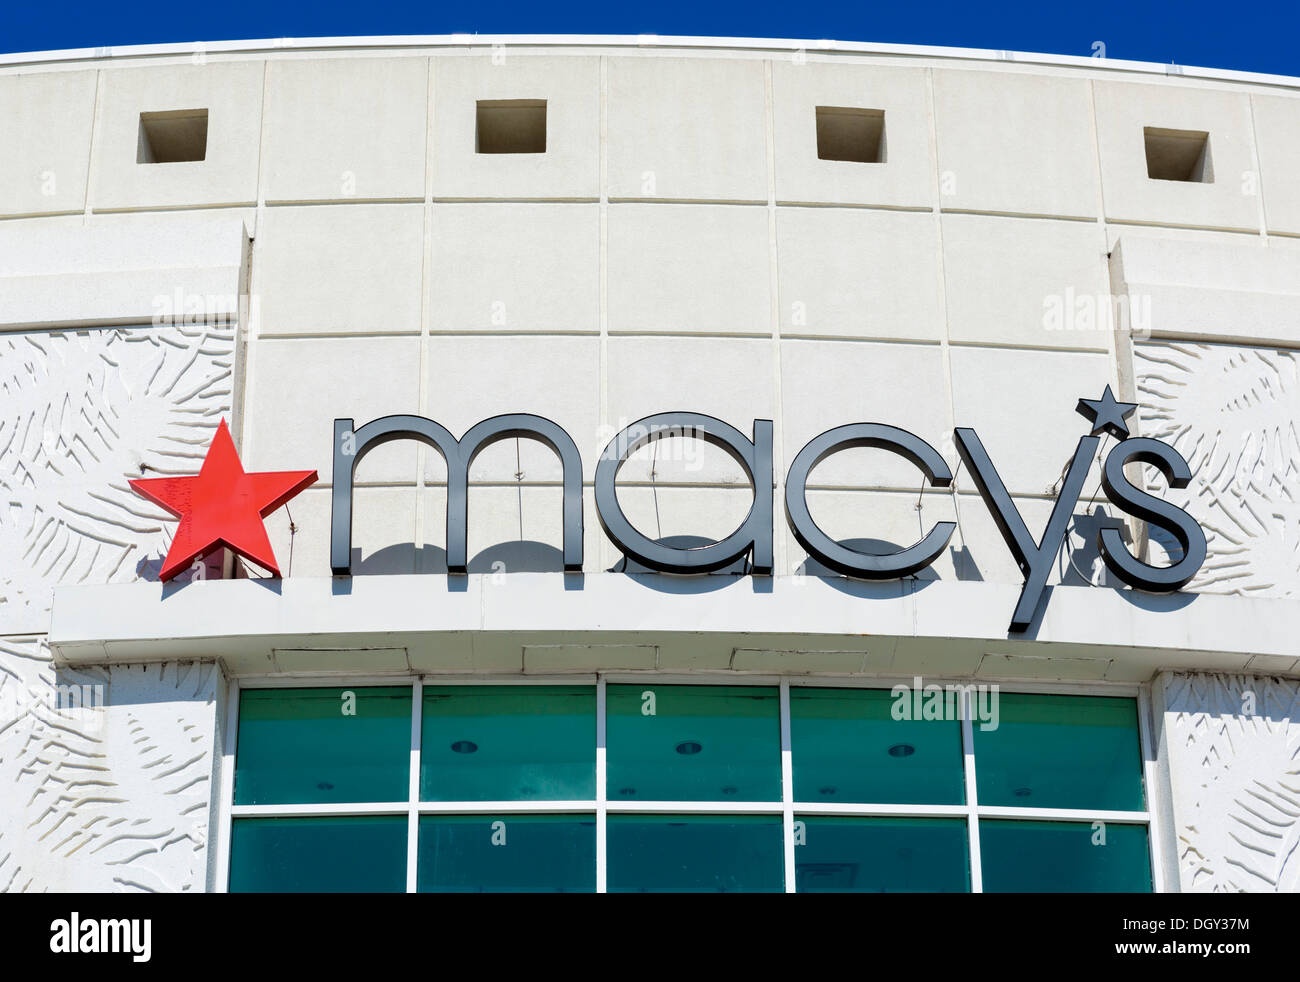 Entrada a los grandes almacenes Macy's en el centro comercial Florida Mall, Orlando, Florida, EE.UU. Foto de stock